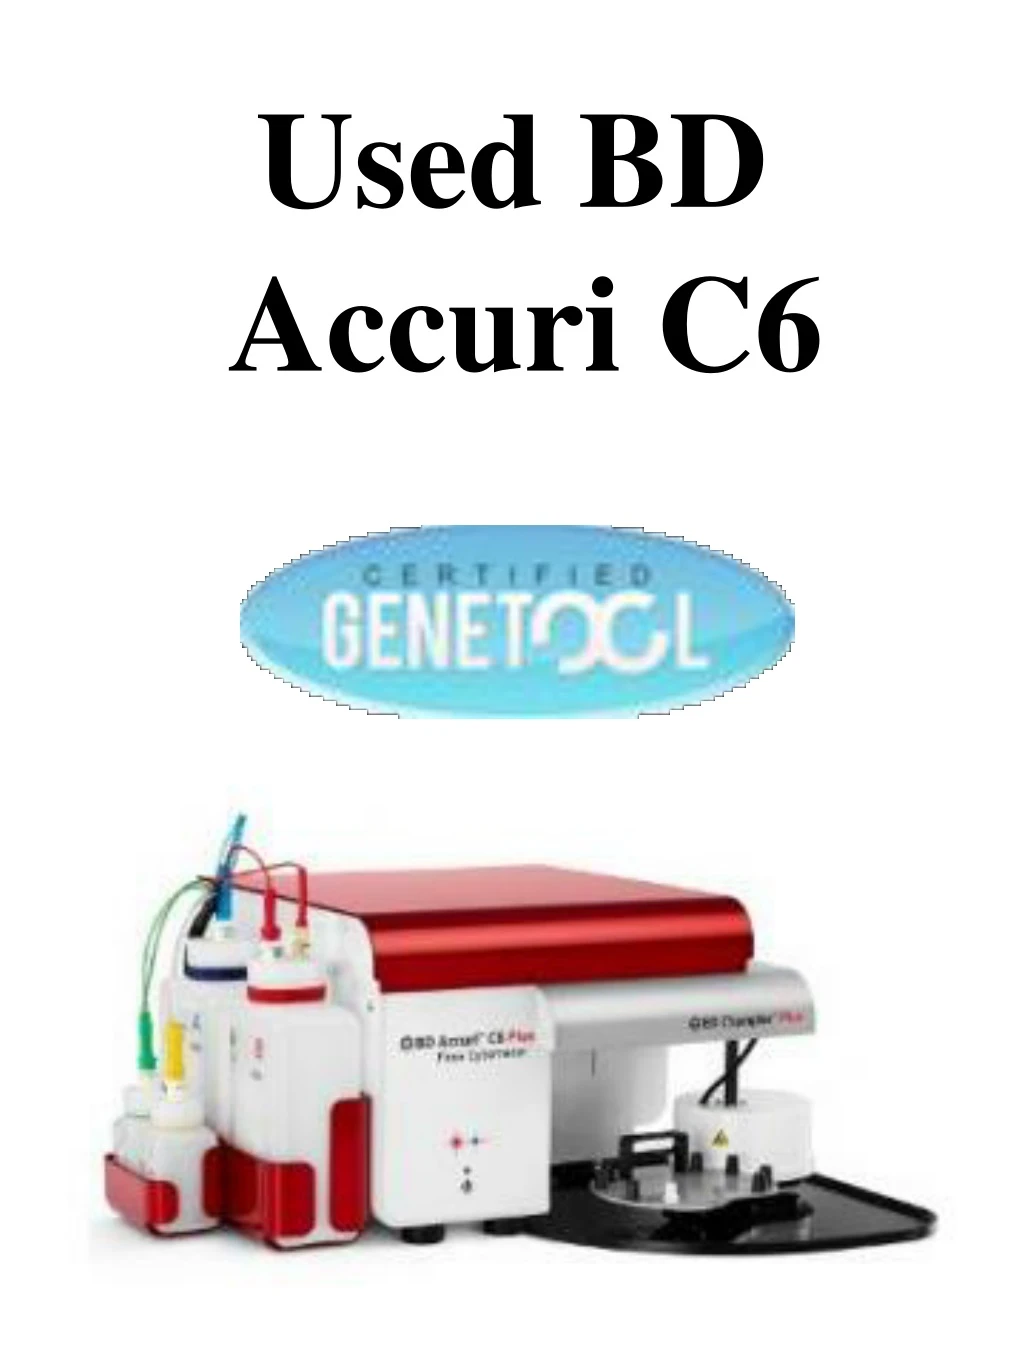 used bd accuri c6